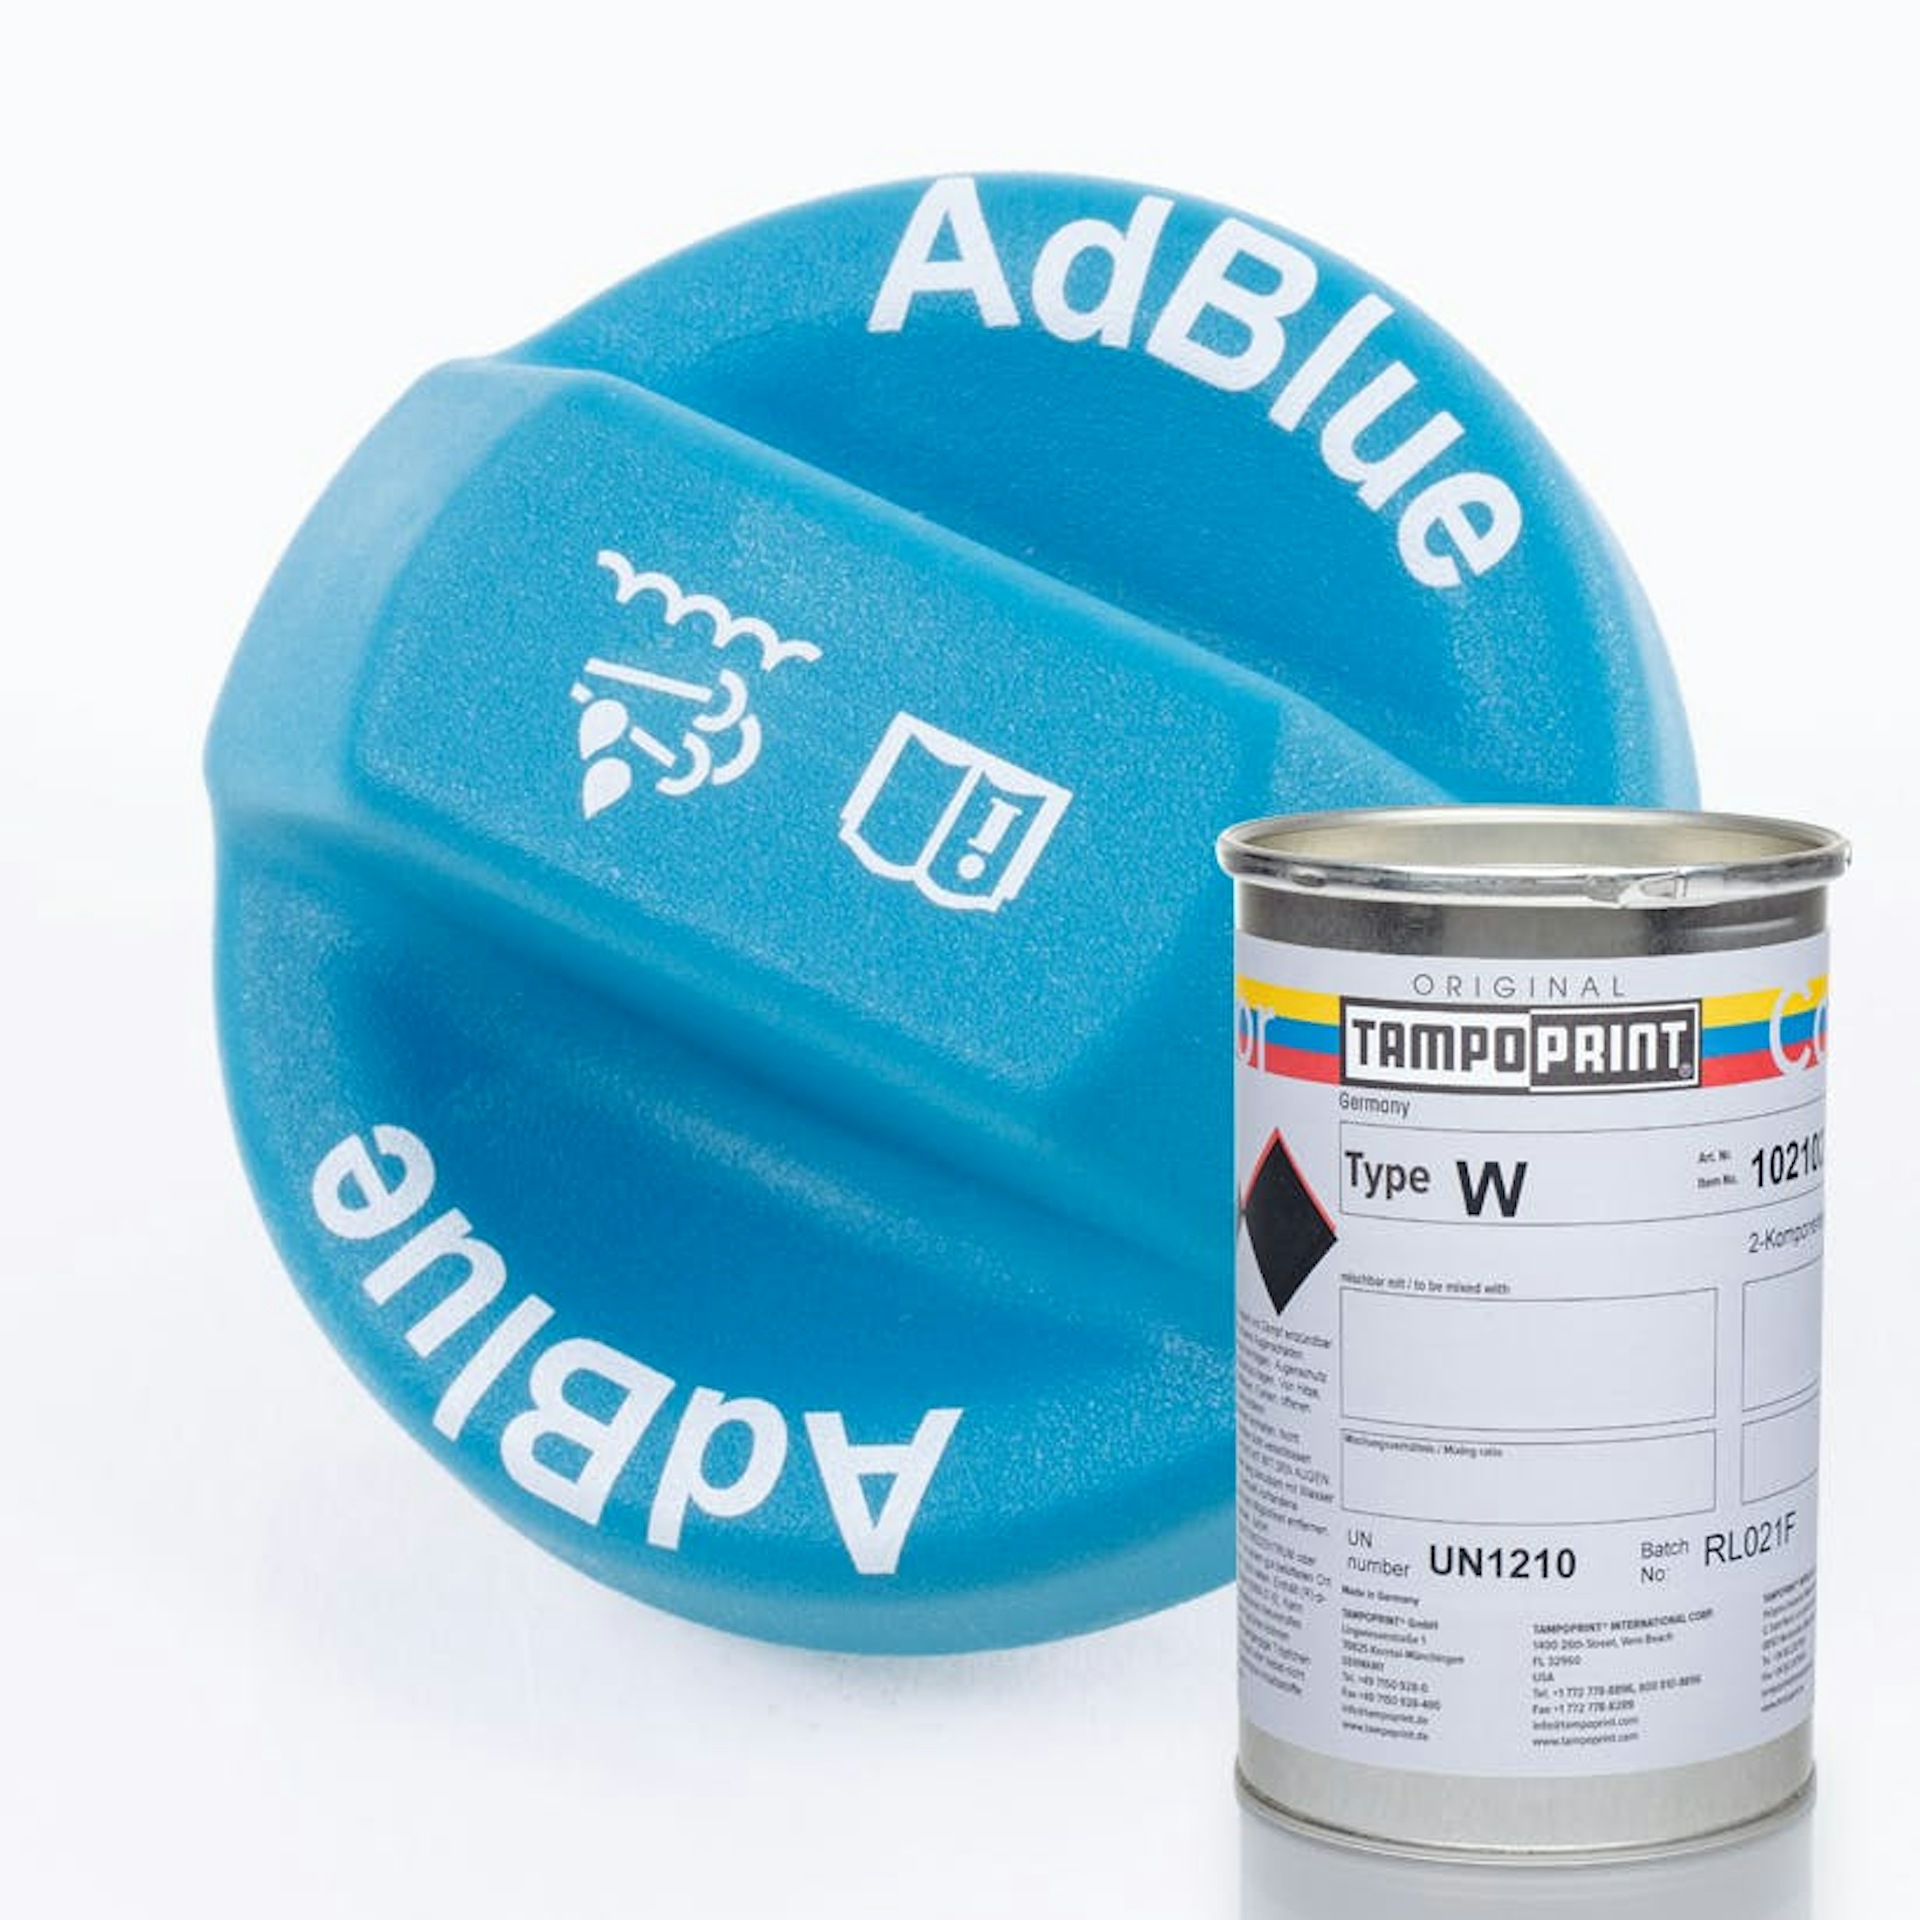 Eine Type W Tampondruckfarbdose mit blauem AdBlue Deckelschraubverschluss im Hintergrund.